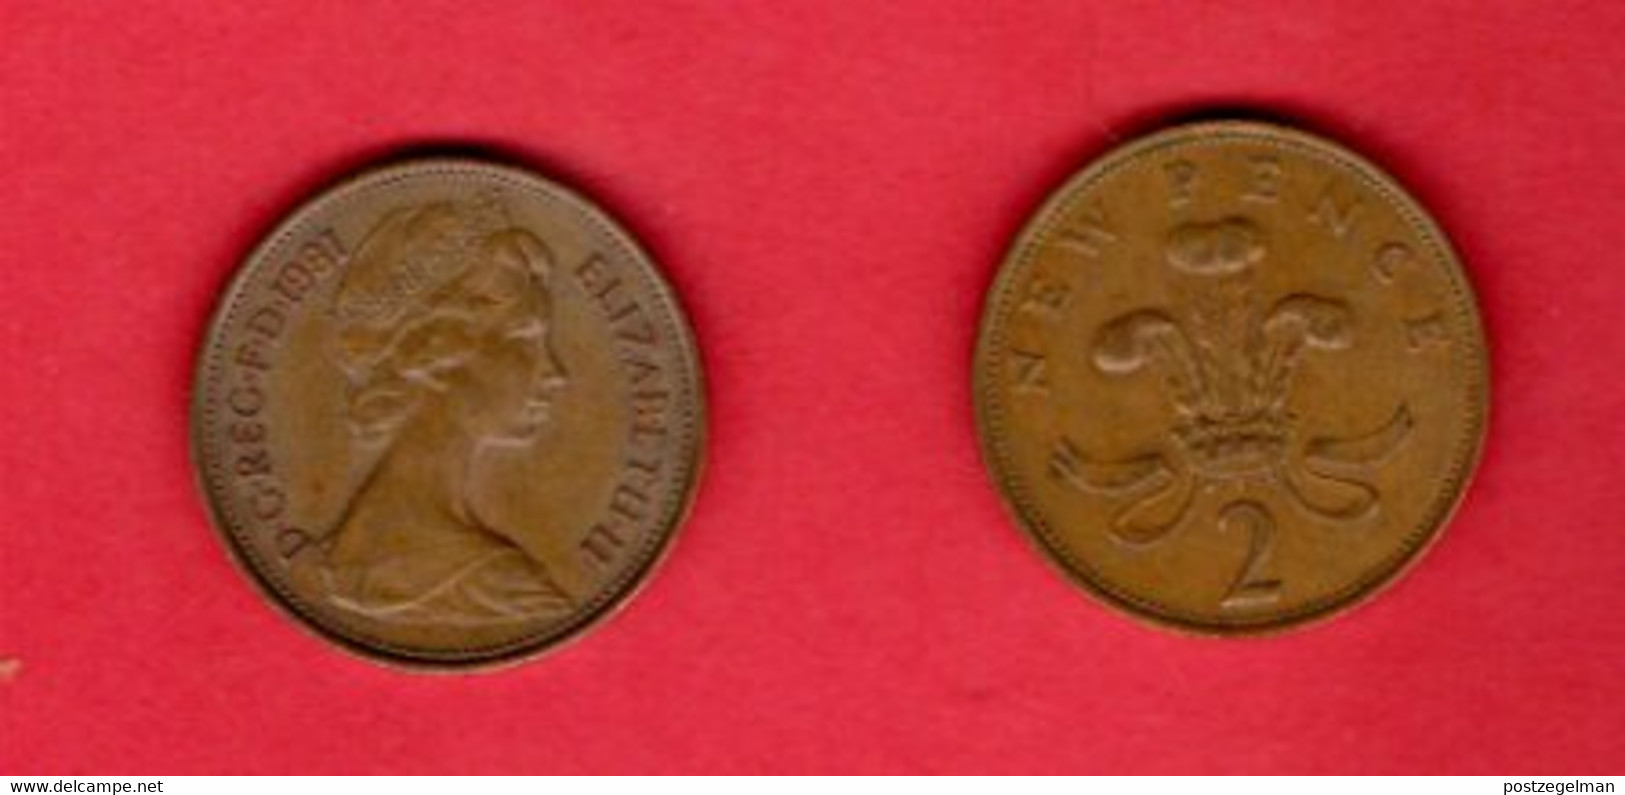 UK , 1981 , 2newPence,   Bronze, KM916, C2306 - 2 Pence & 2 New Pence